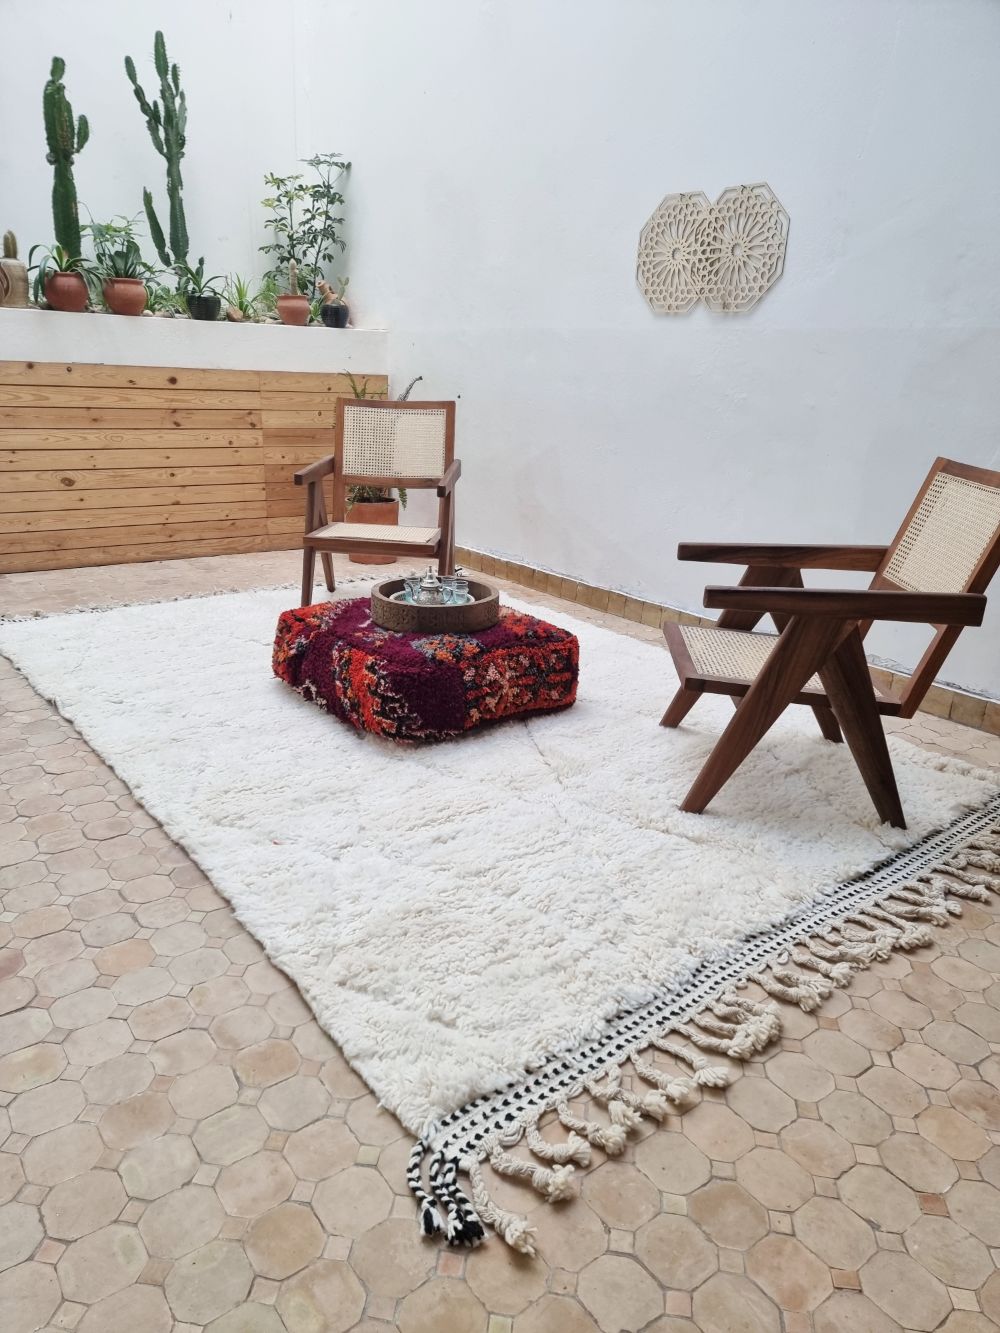 Marokkolainen valkoinen matto 290x200cm